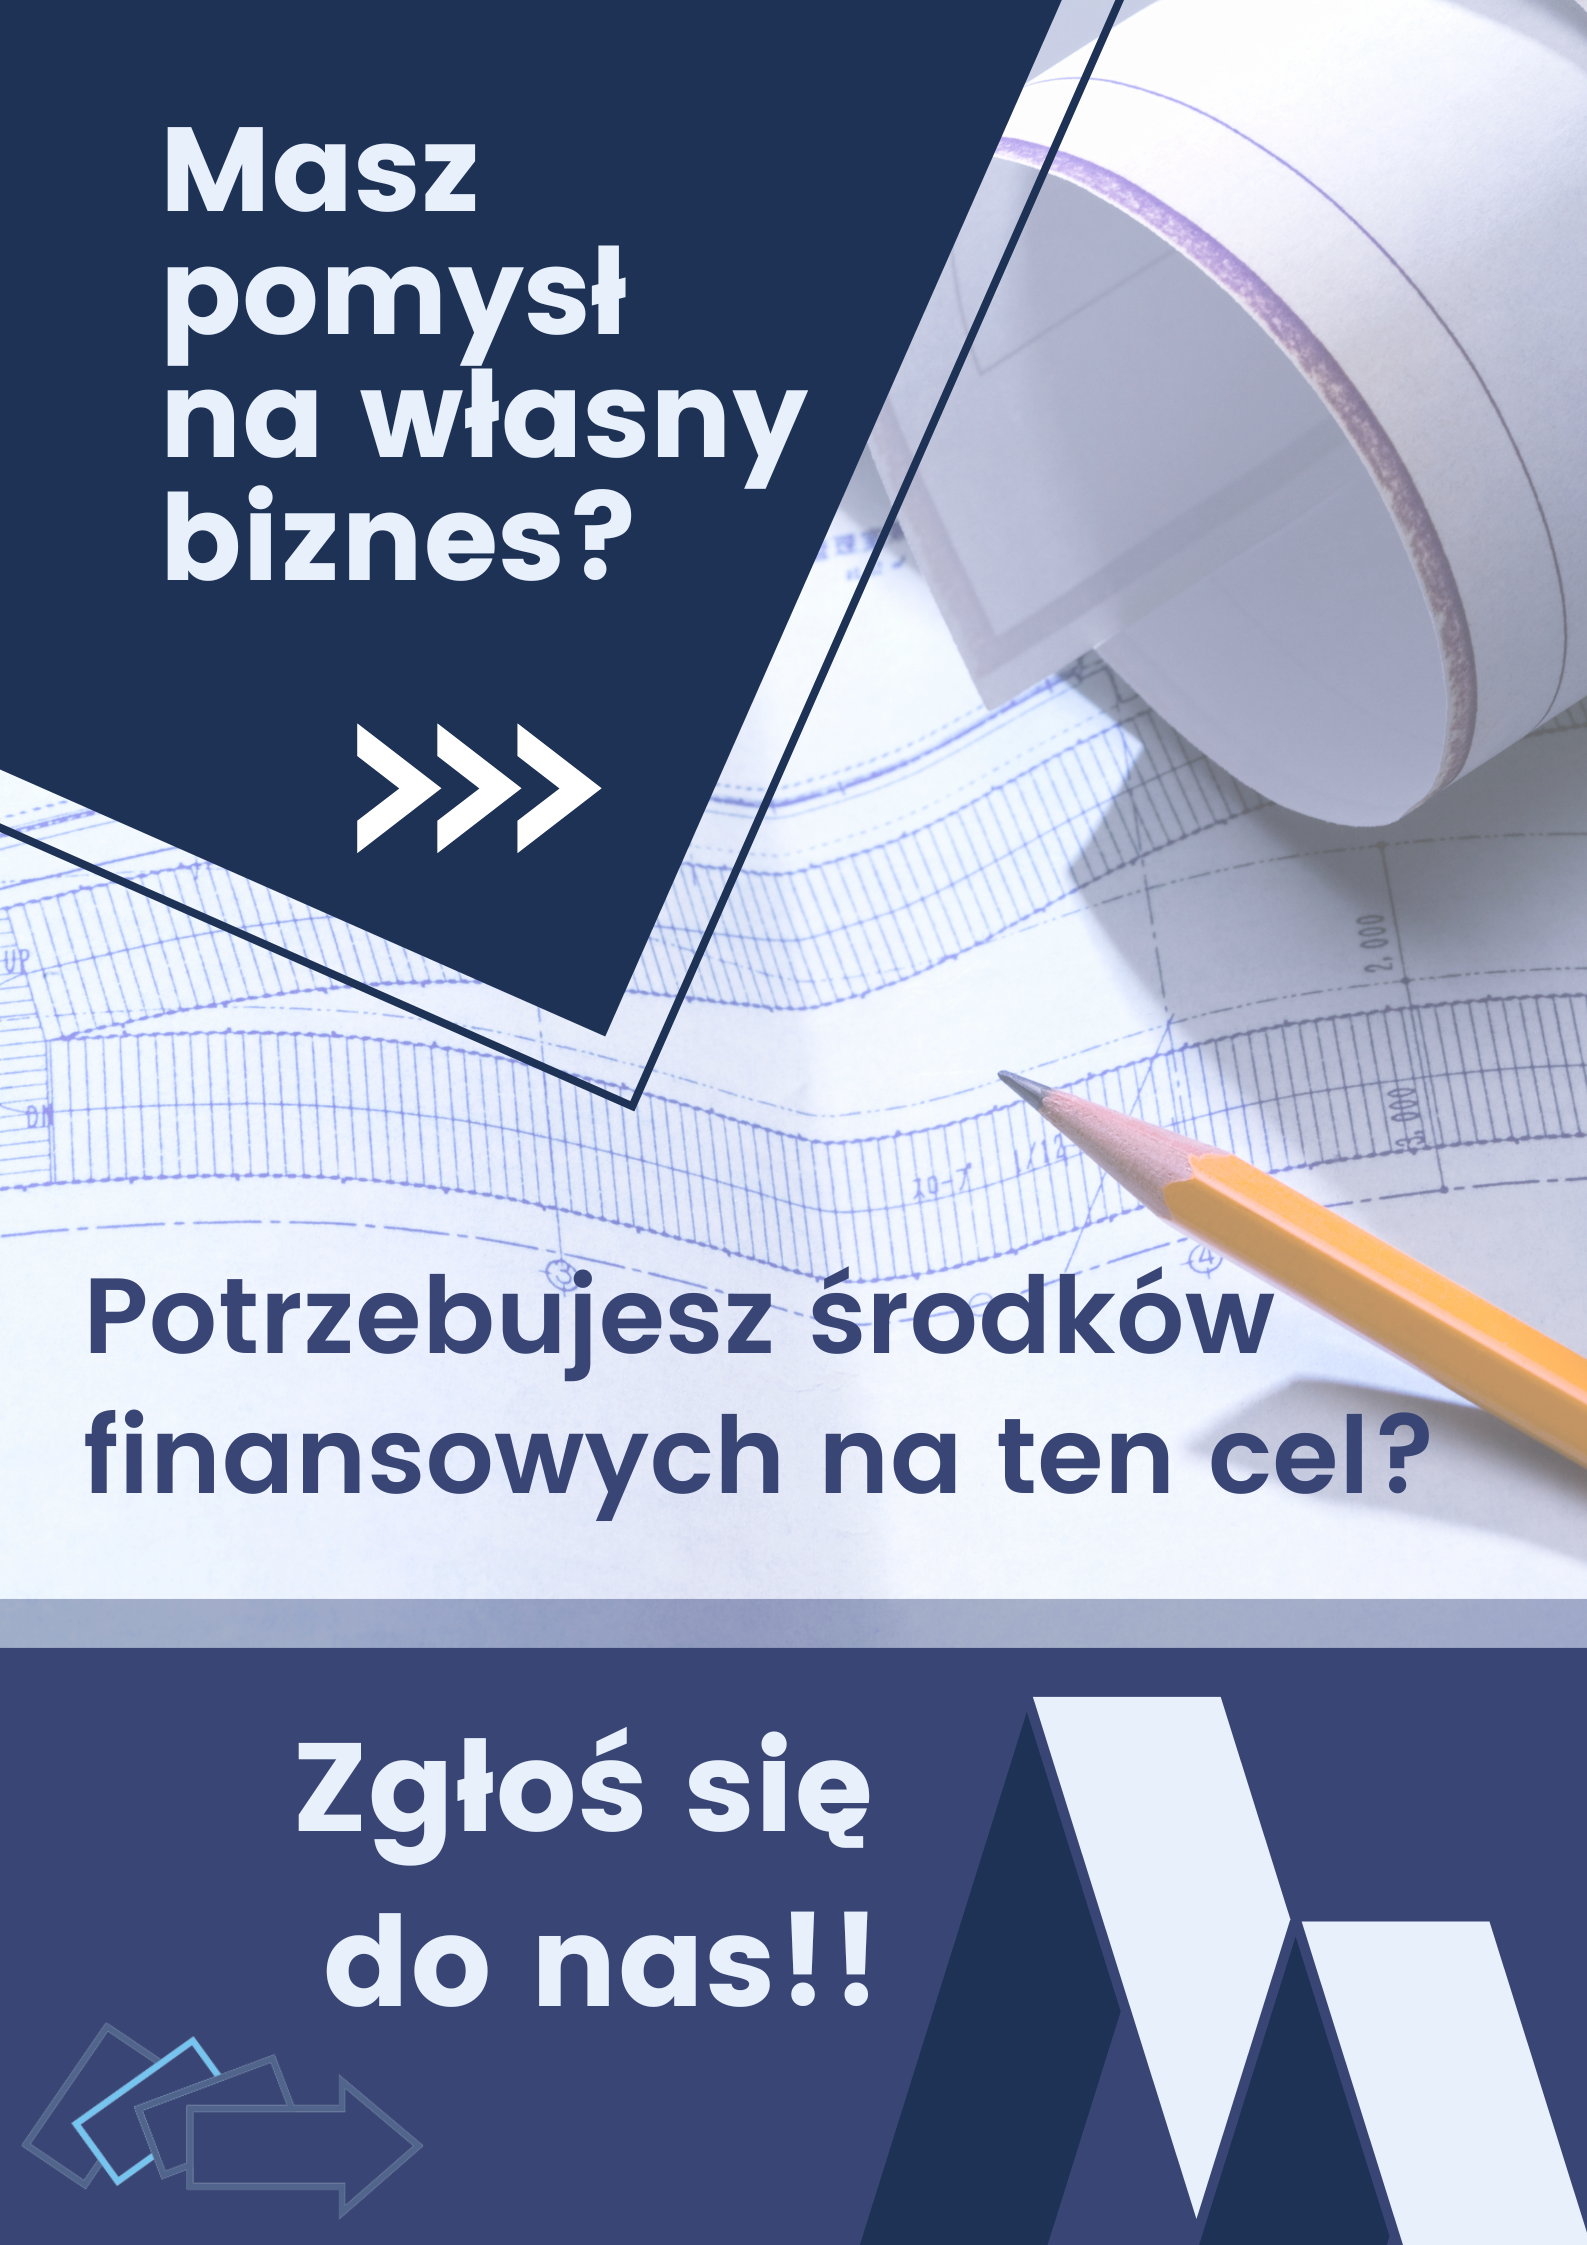 Grafika przedstawiająca ołówek na kartce z planem oraz niebieskie kwadraty. Zawiera tekst: "Masz pomysł na biznes? Zgłoś się do nas"